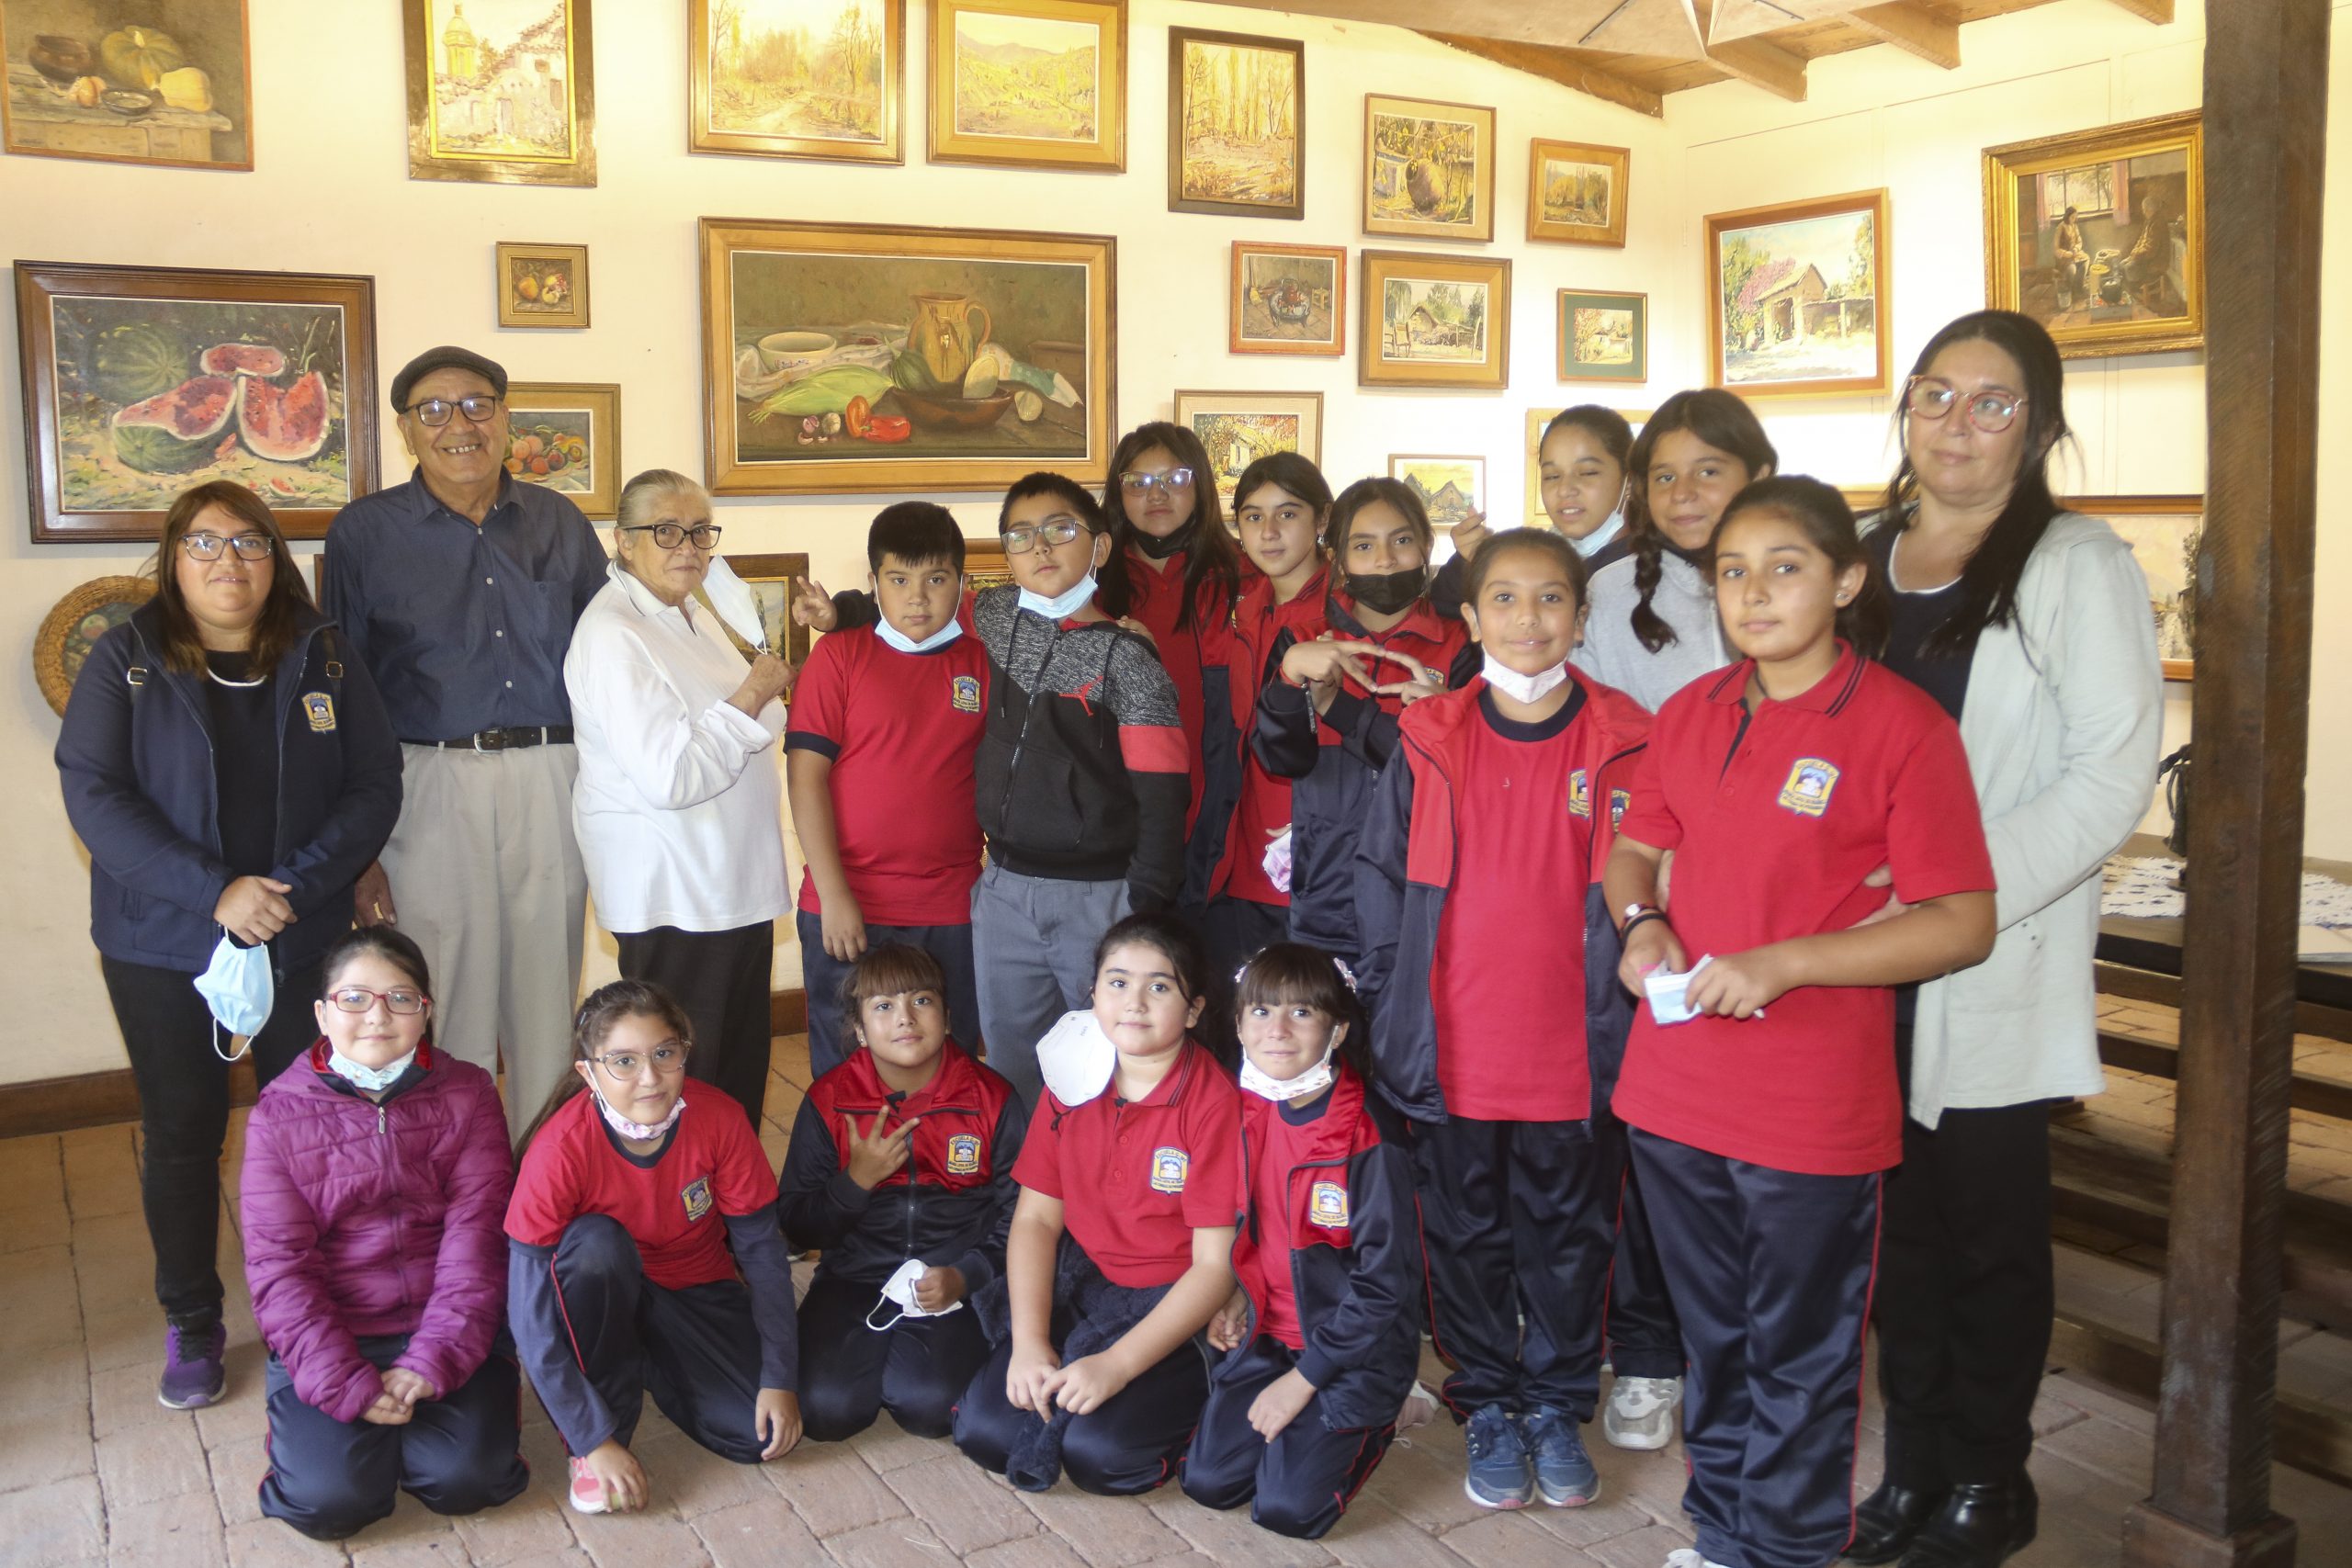 PUTAENDO:  Exposición del destacado pintor Raúl Pizarro Galdames es visitada por diversas escuelas y liceos de Putaendo